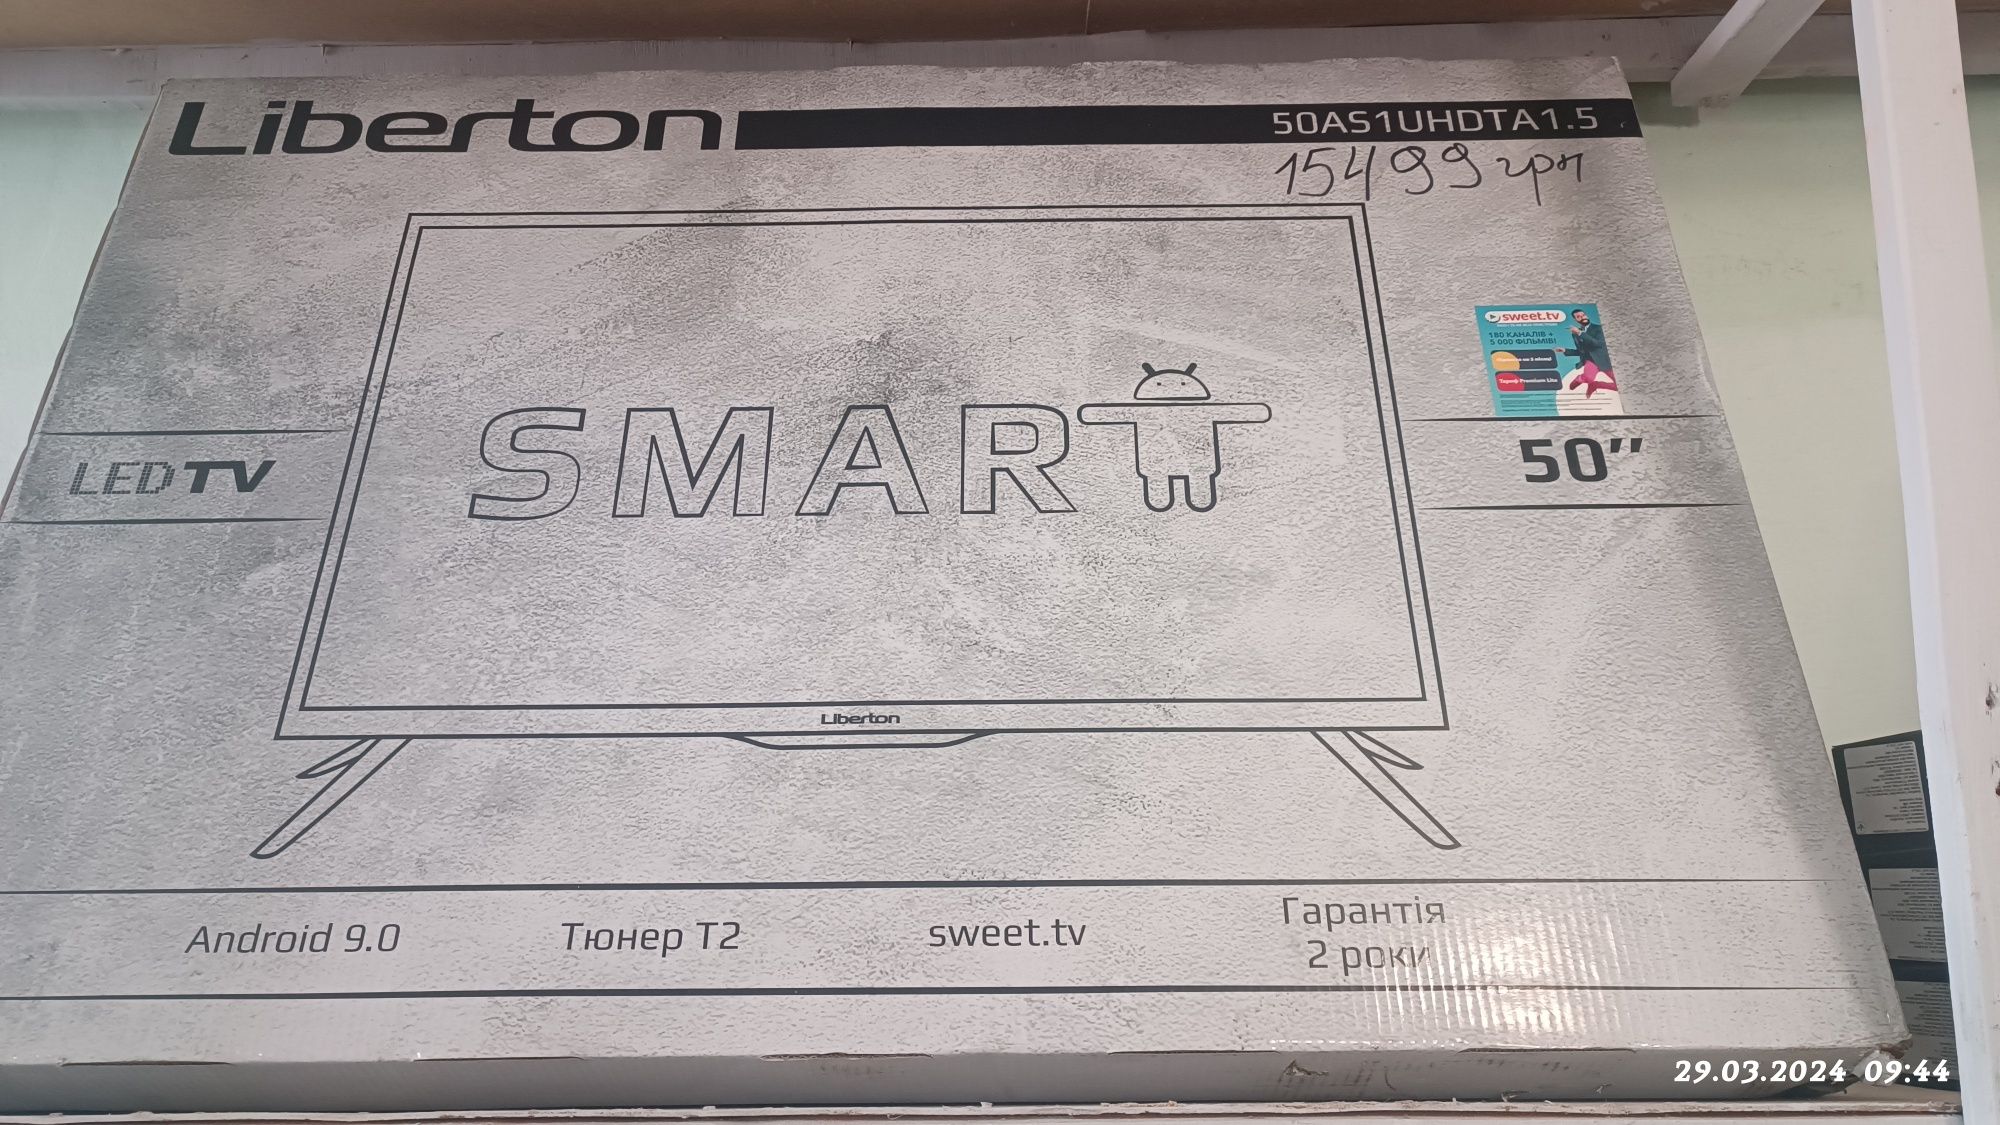 Телевізор Liberton 50AS1FHDTA1 новий нерозпакований